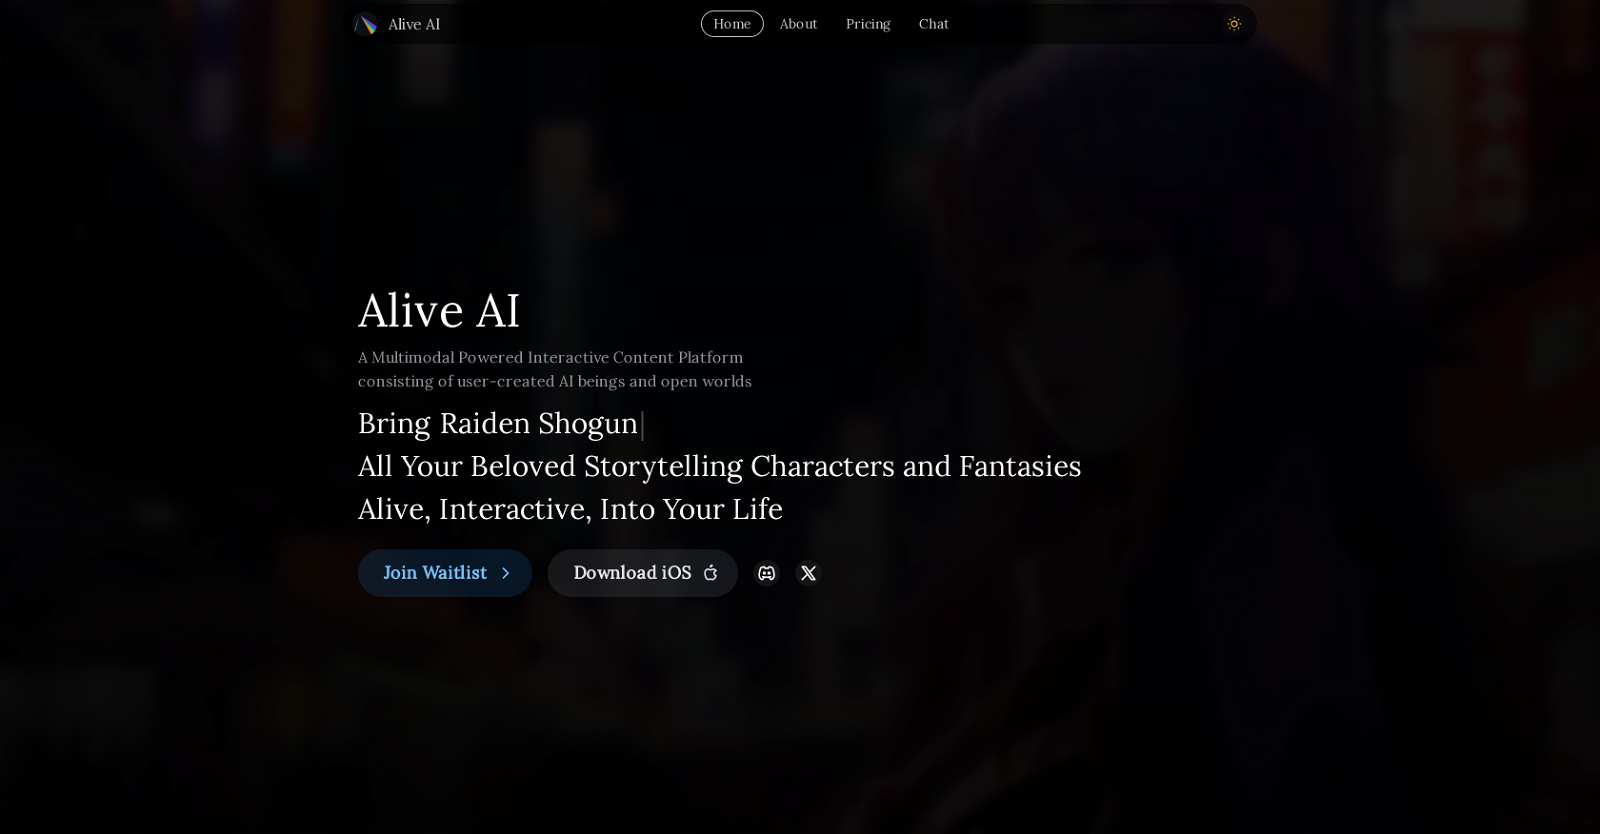 Alive AI website